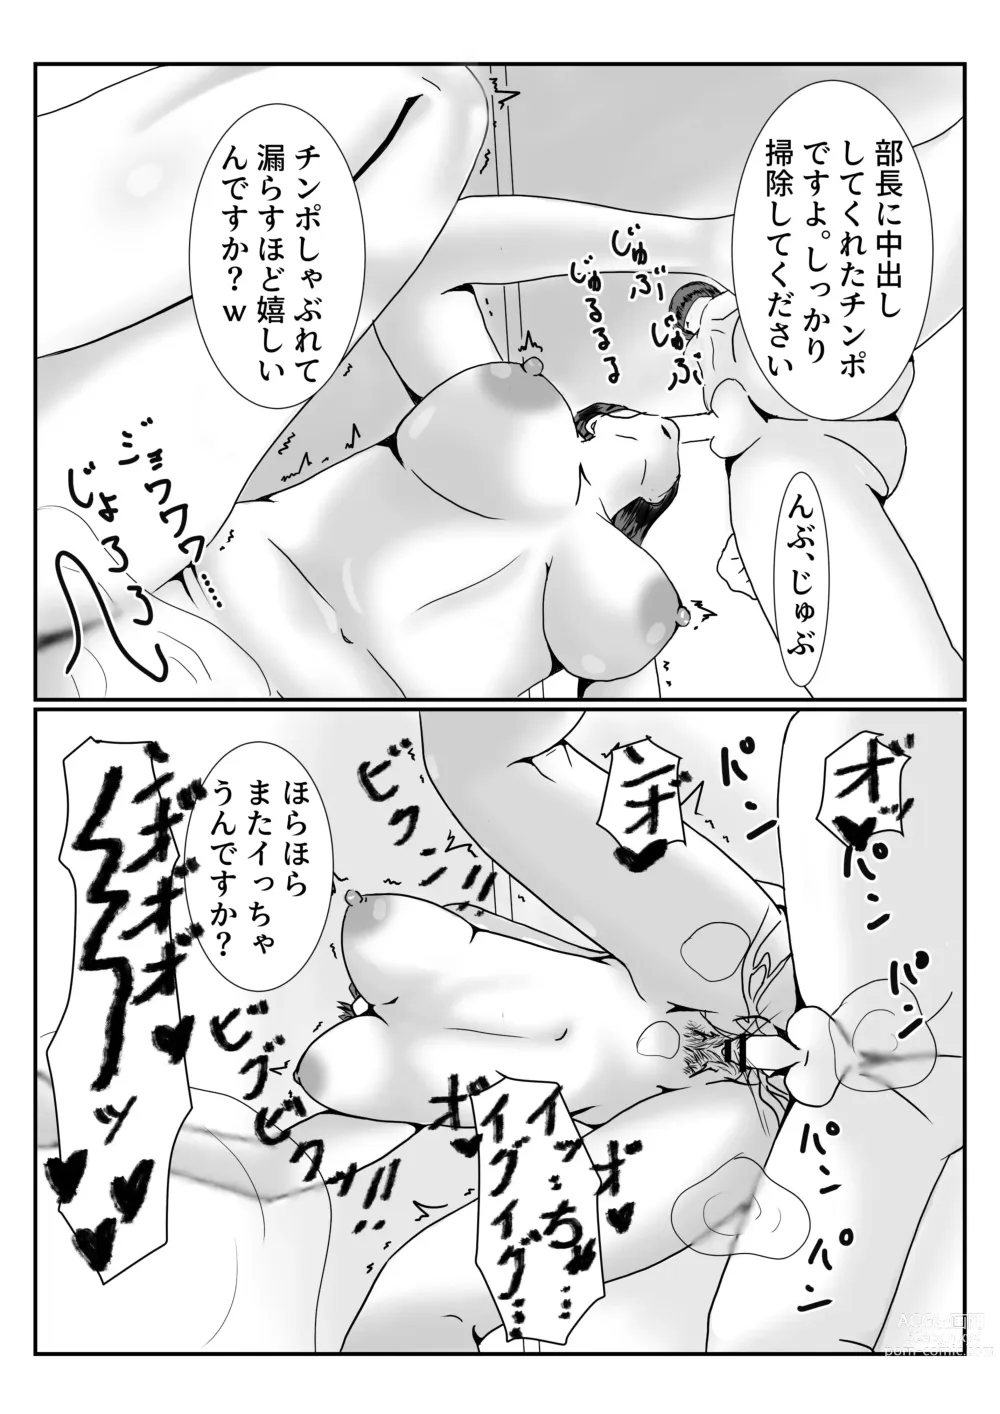 Page 30 of doujinshi Mesu no Shitsuke Kata